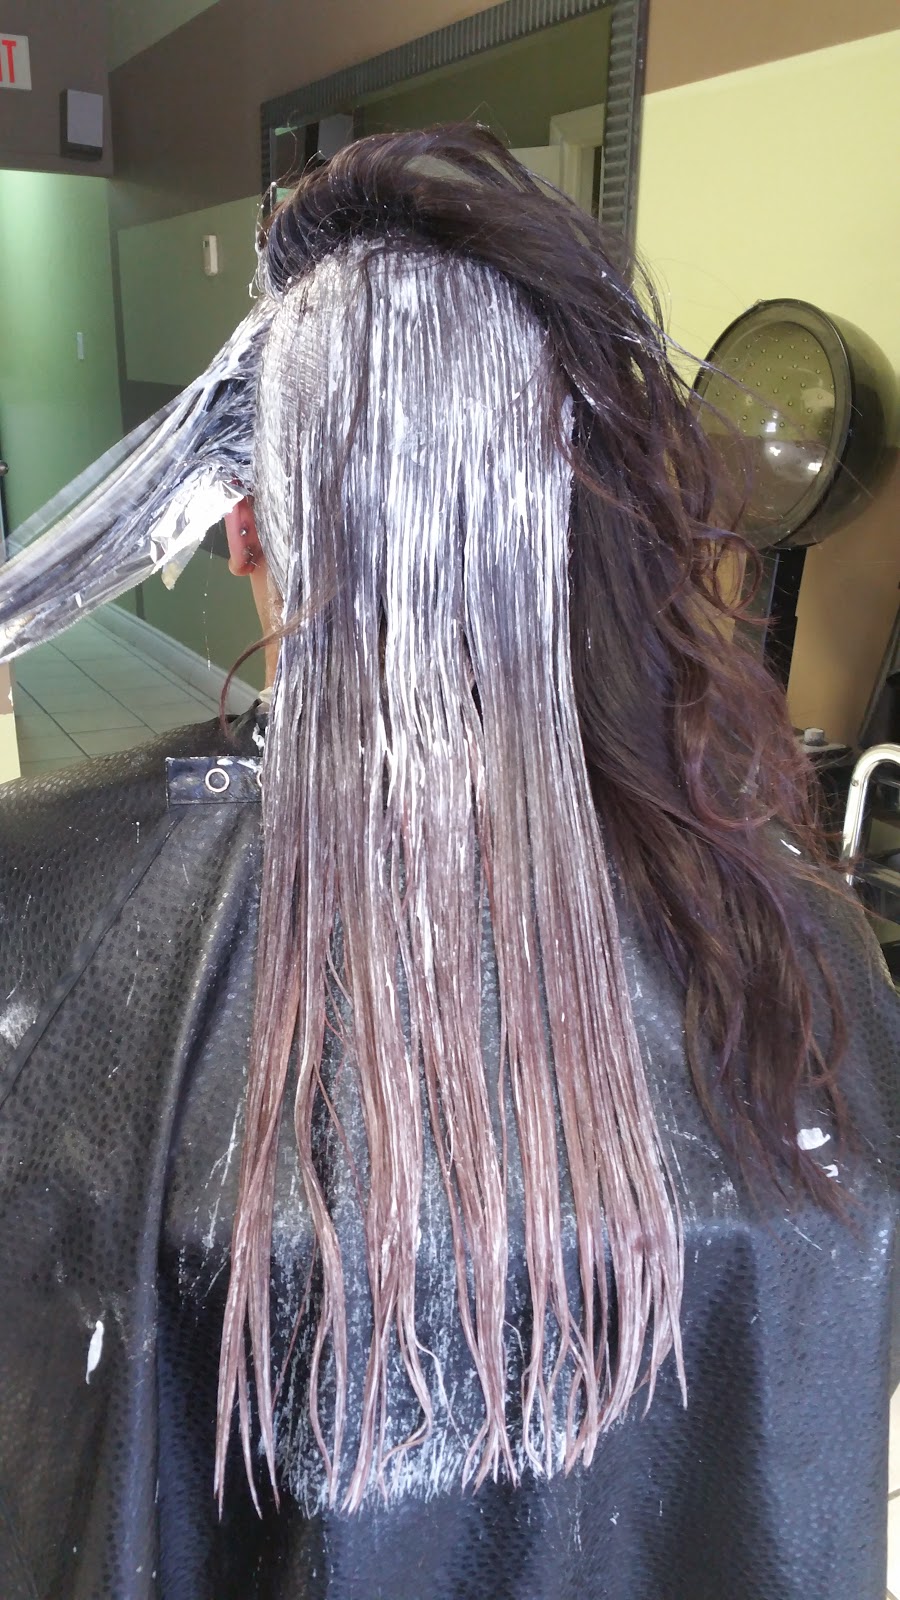 Ola Hair Design | 3619 Innes Rd, Orléans, ON K1C 1T1, Canada | Phone: (613) 590-2090